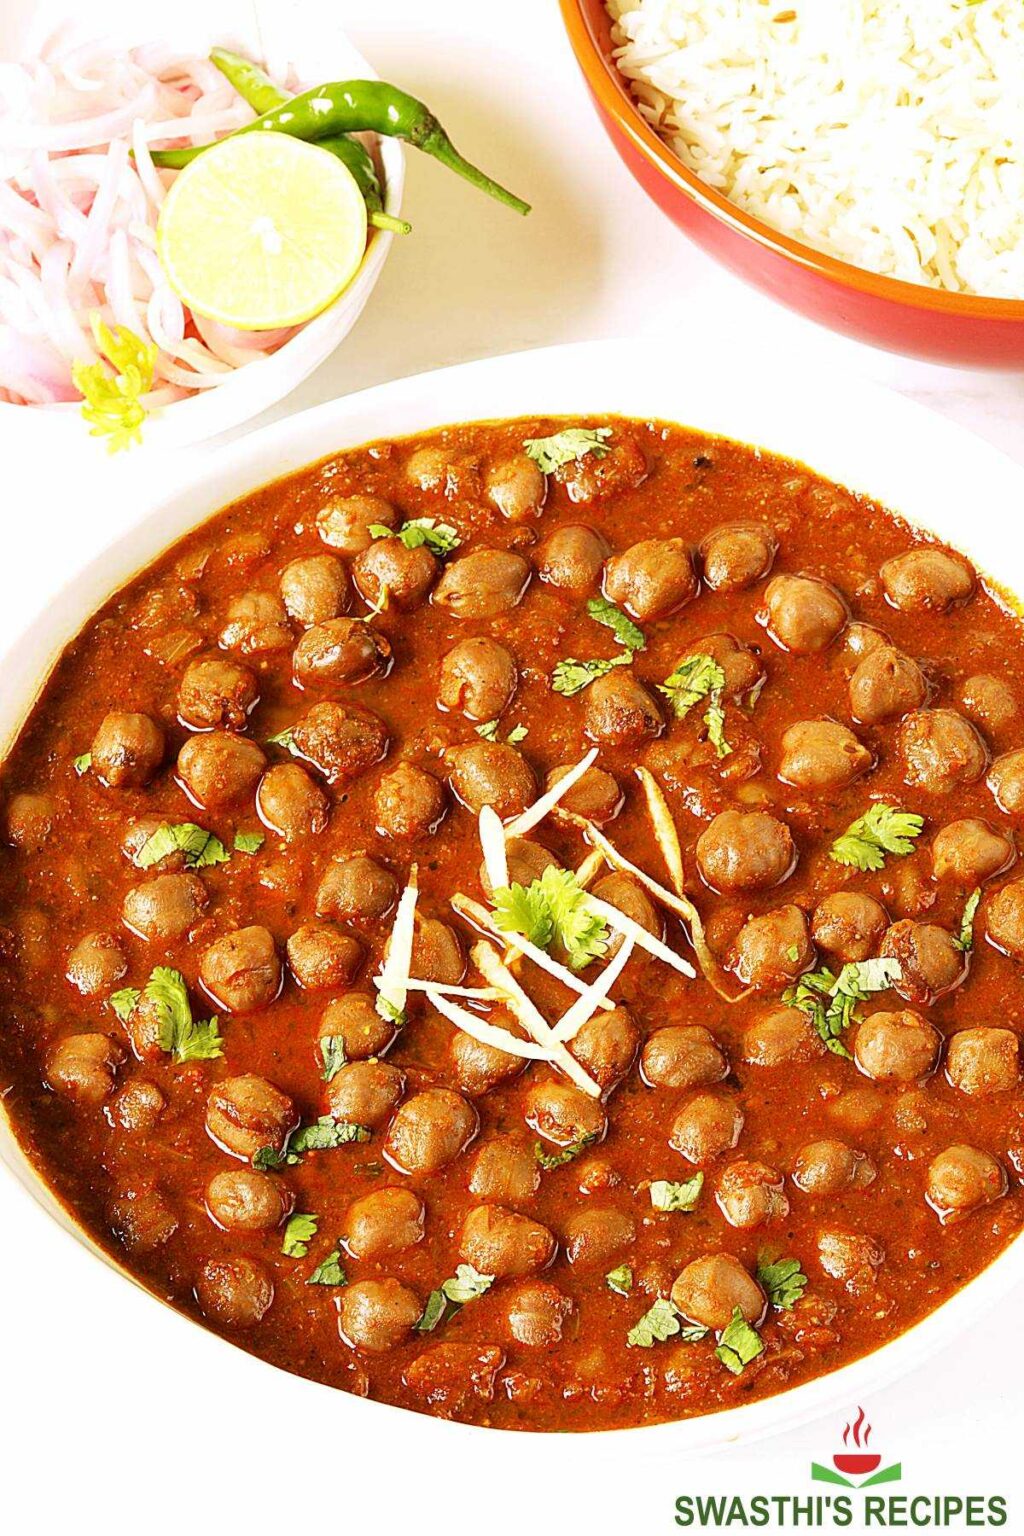 Chole recipe | How to make punjabi chole - Swasthi's Recipes